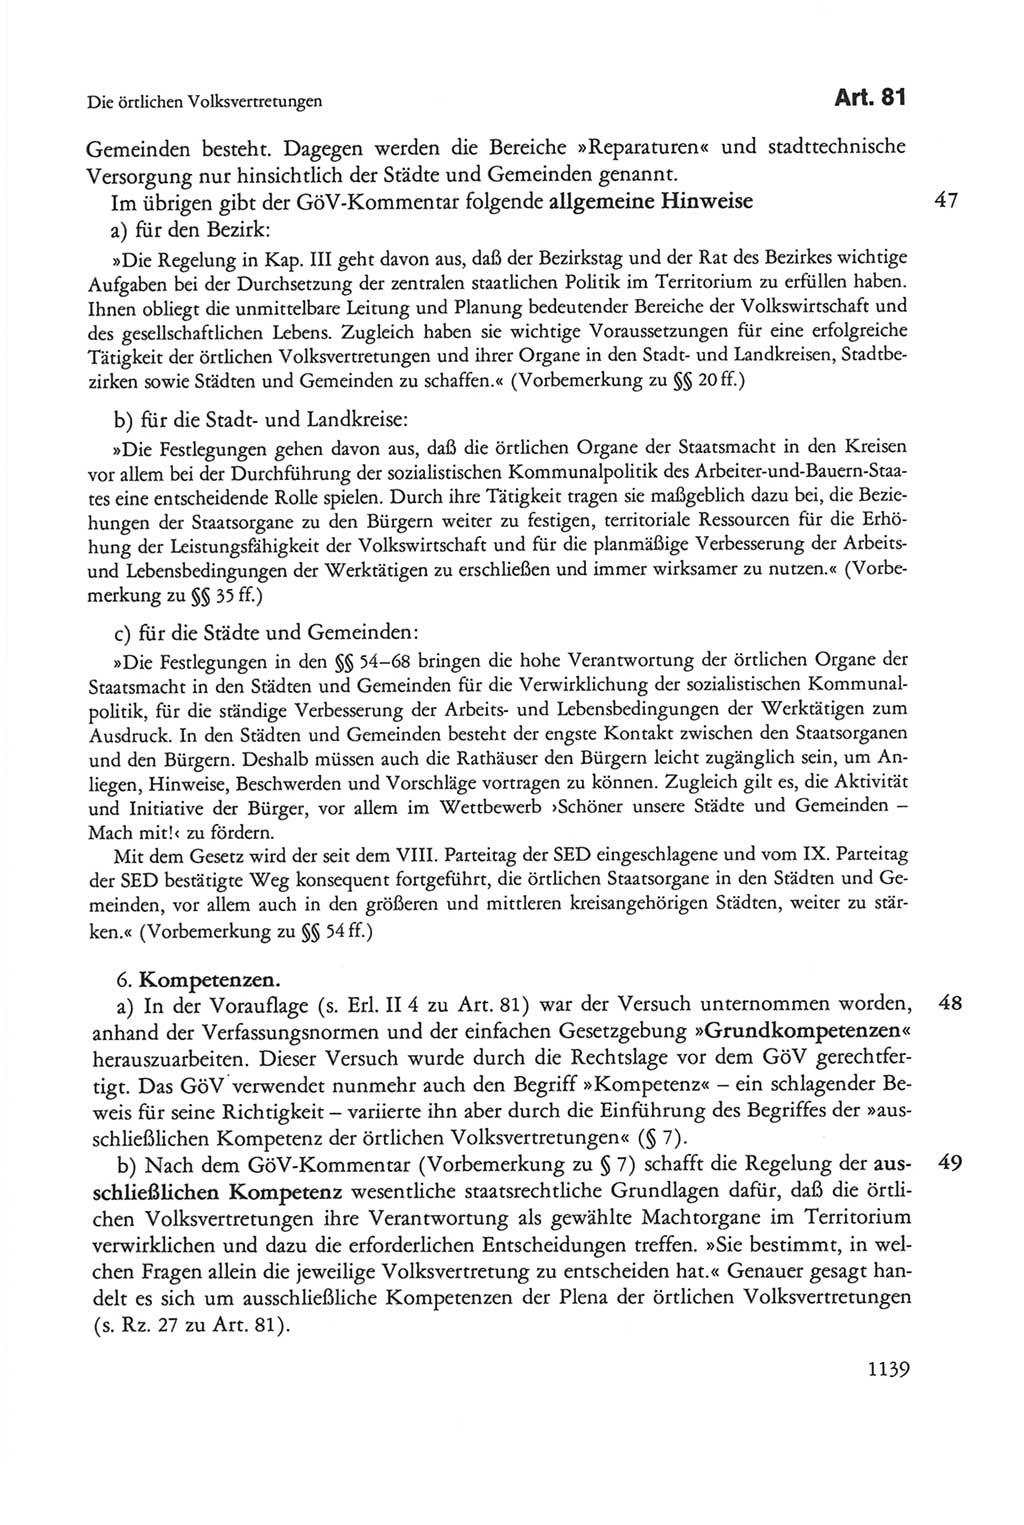 Die sozialistische Verfassung der Deutschen Demokratischen Republik (DDR), Kommentar mit einem Nachtrag 1997, Seite 1139 (Soz. Verf. DDR Komm. Nachtr. 1997, S. 1139)